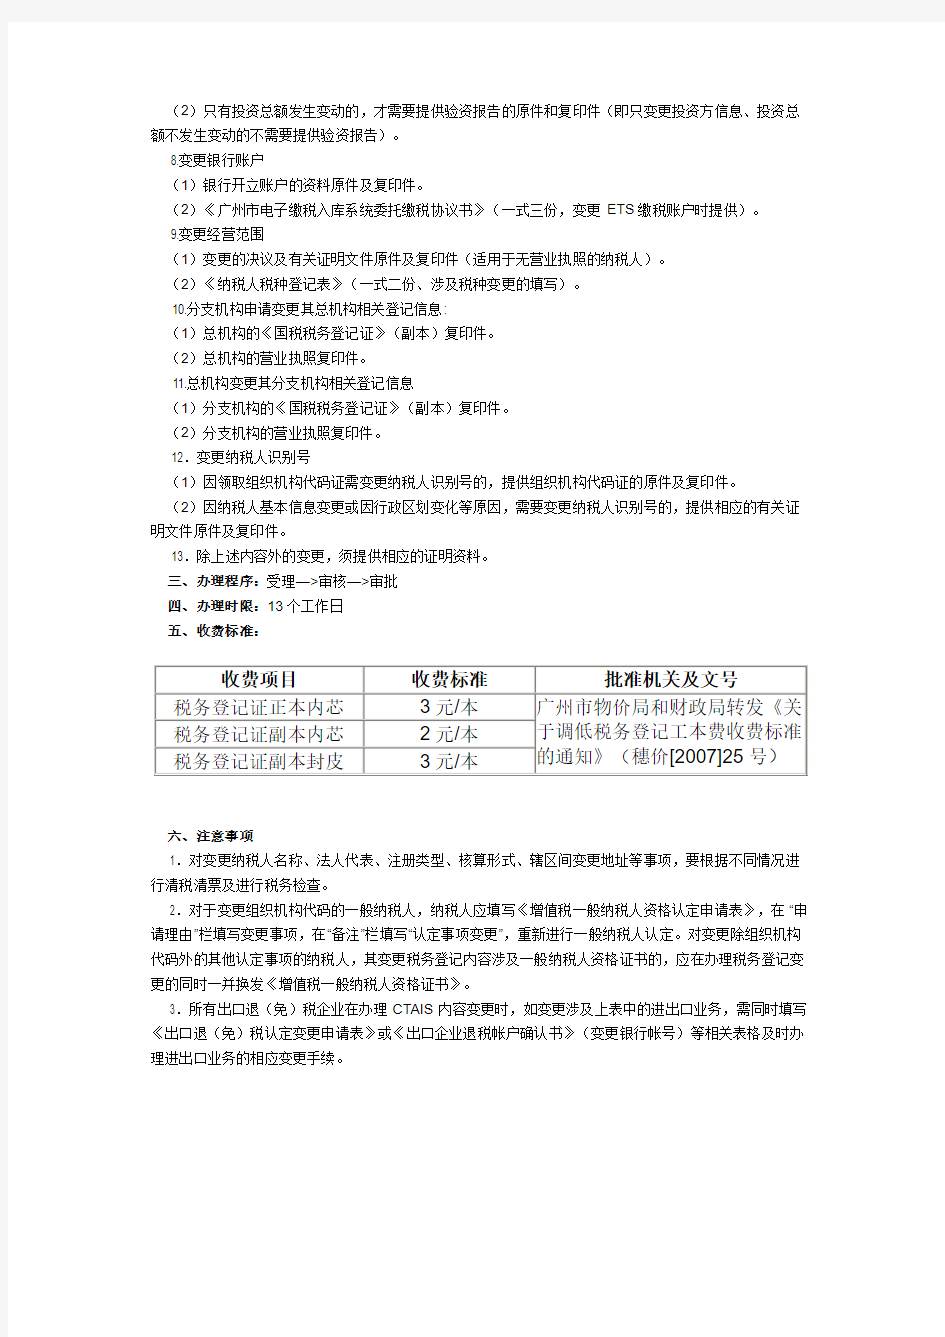 广州市税务登记的变更登记需要的资料及程序)